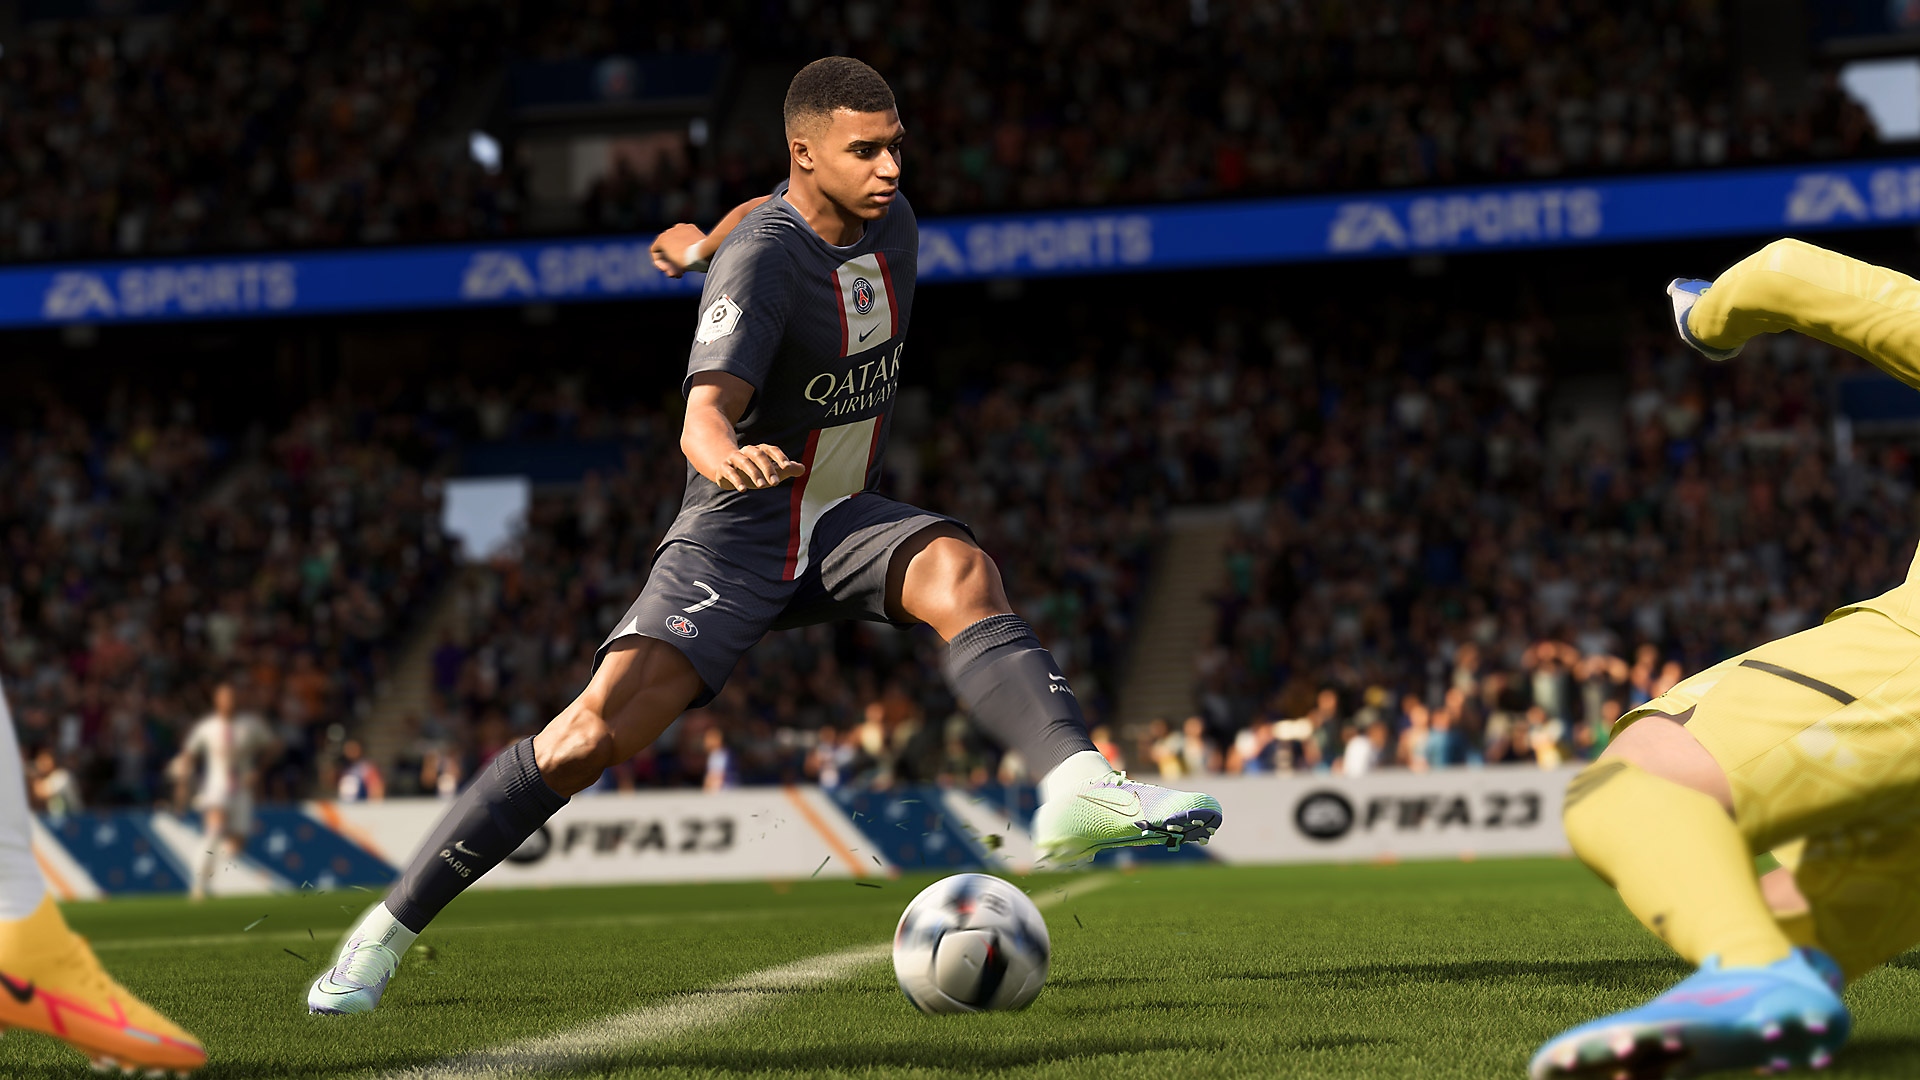 Zrzut ekranu z gry EA Sports FIFA 23 pokazujący gracza oddającego strzał